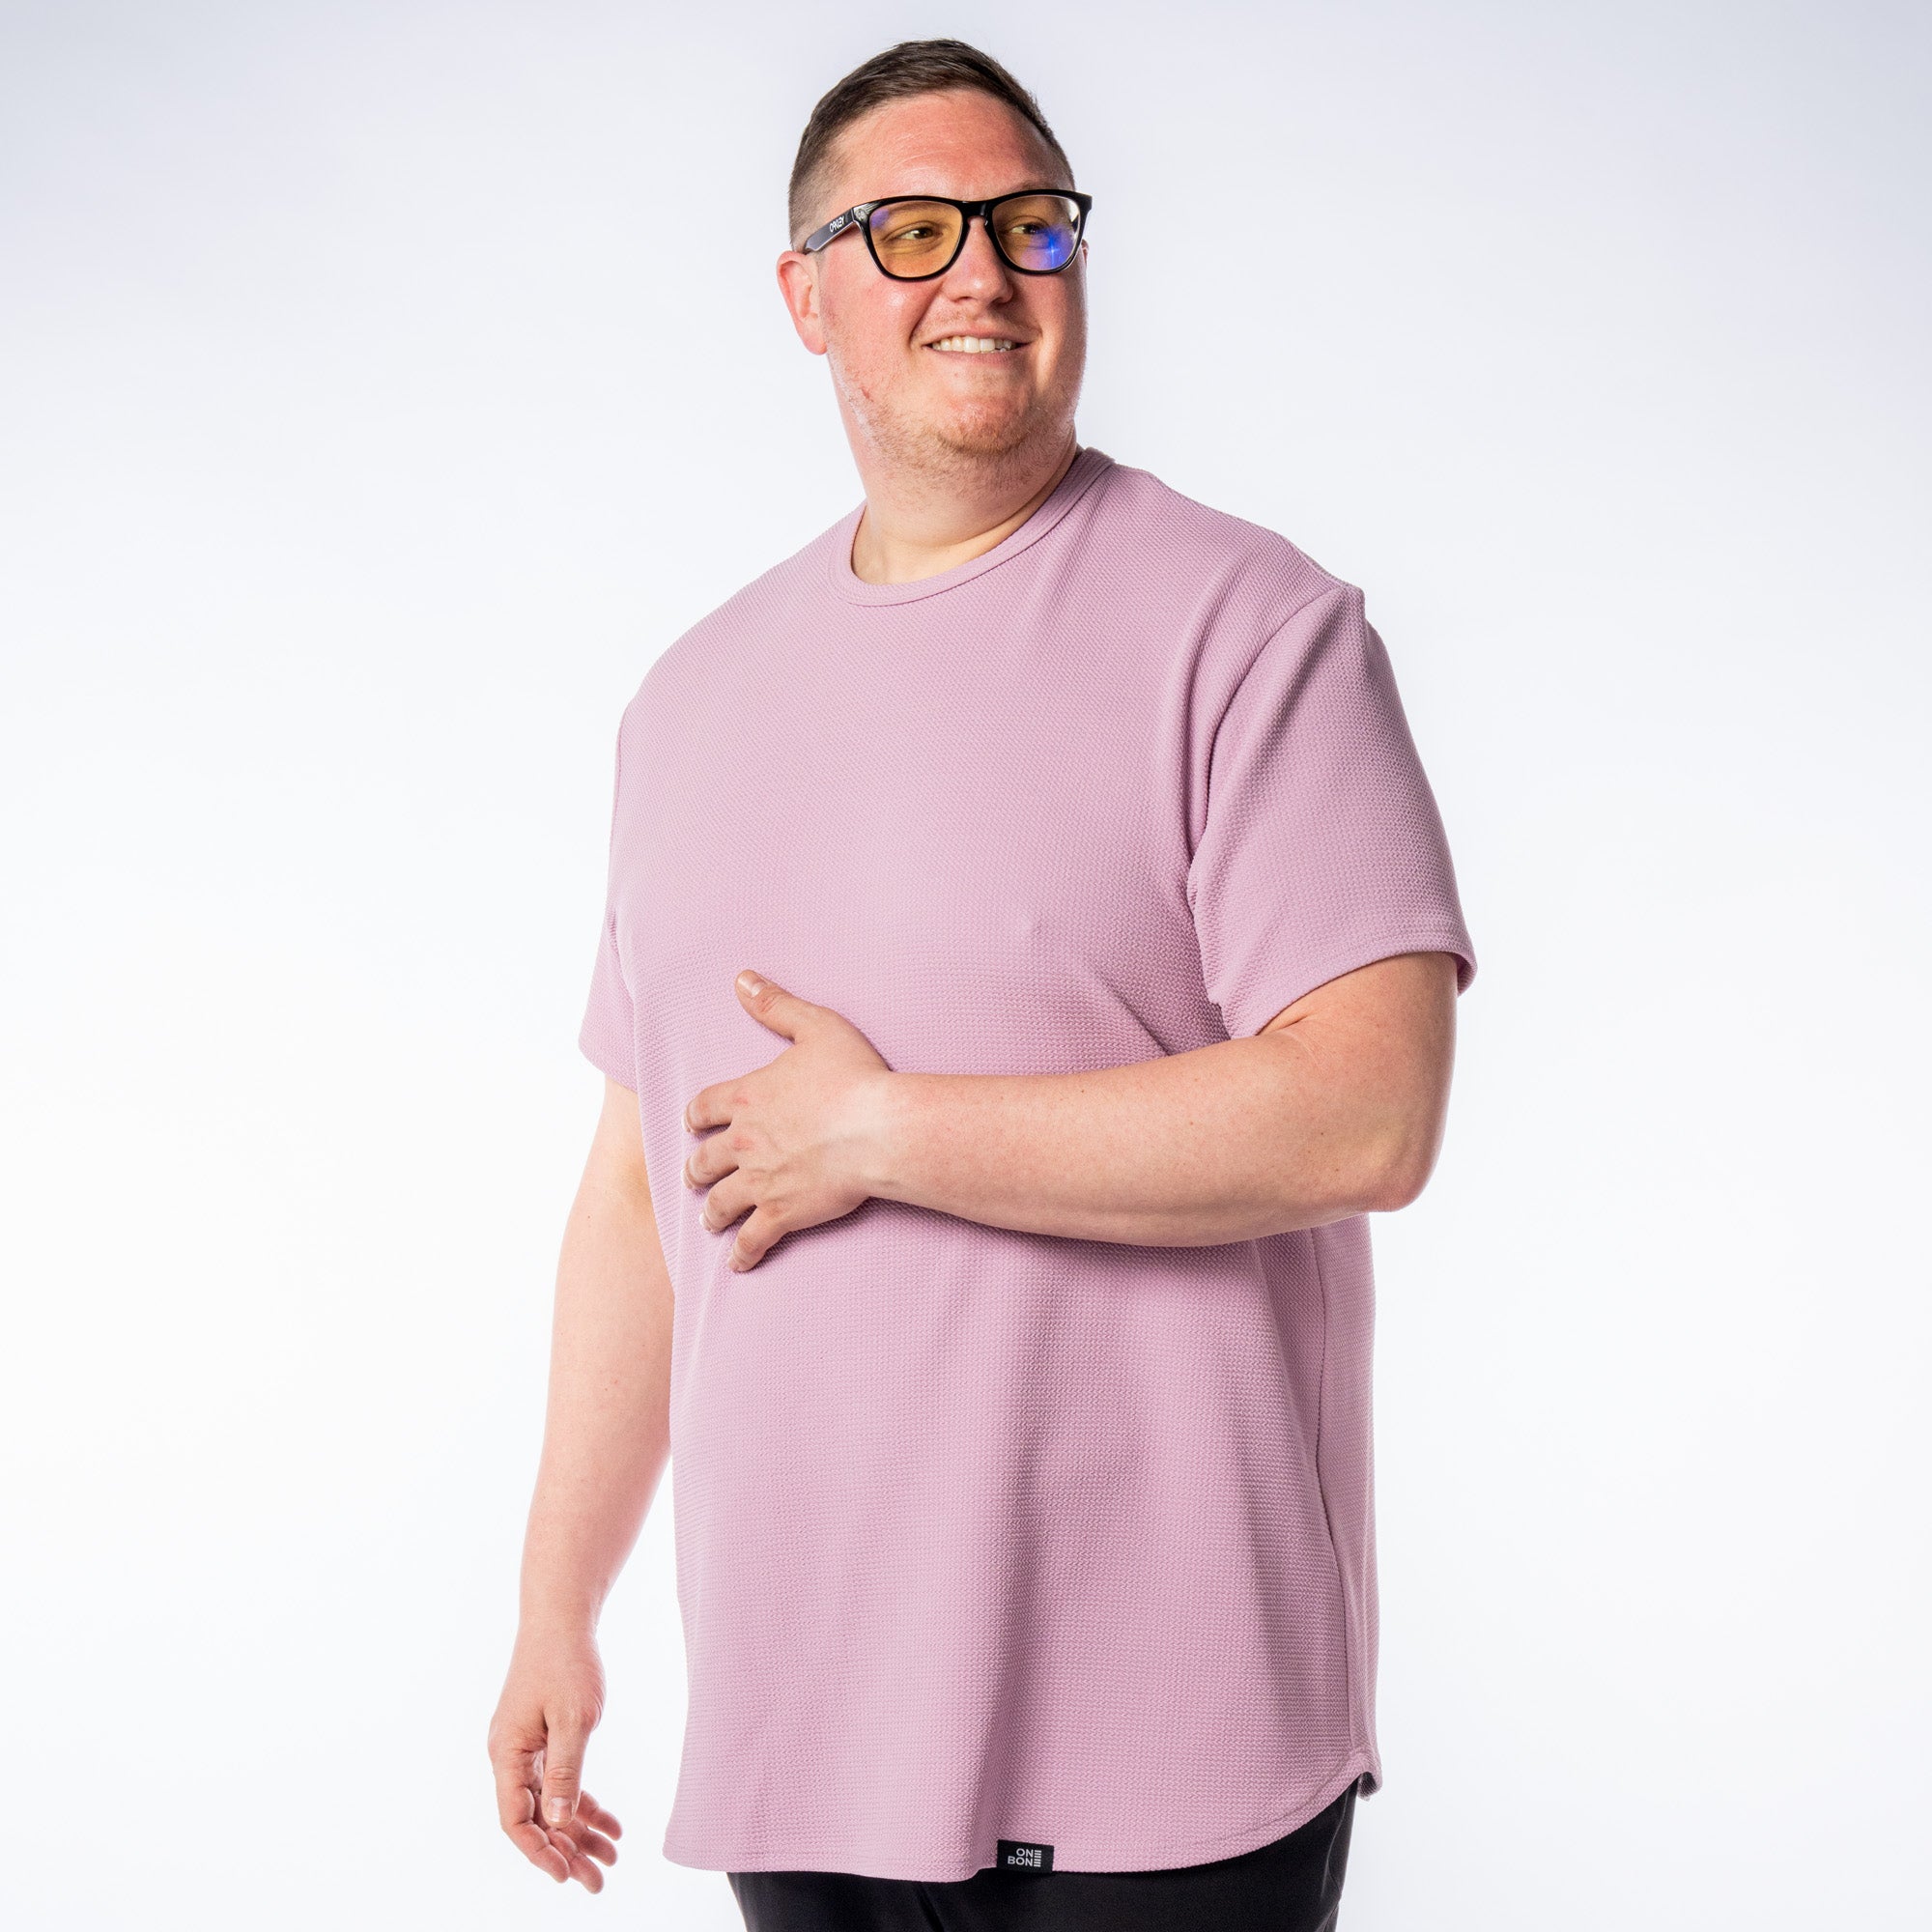 model-specs: Adam is 6'3" | 320 lbs | Size 2